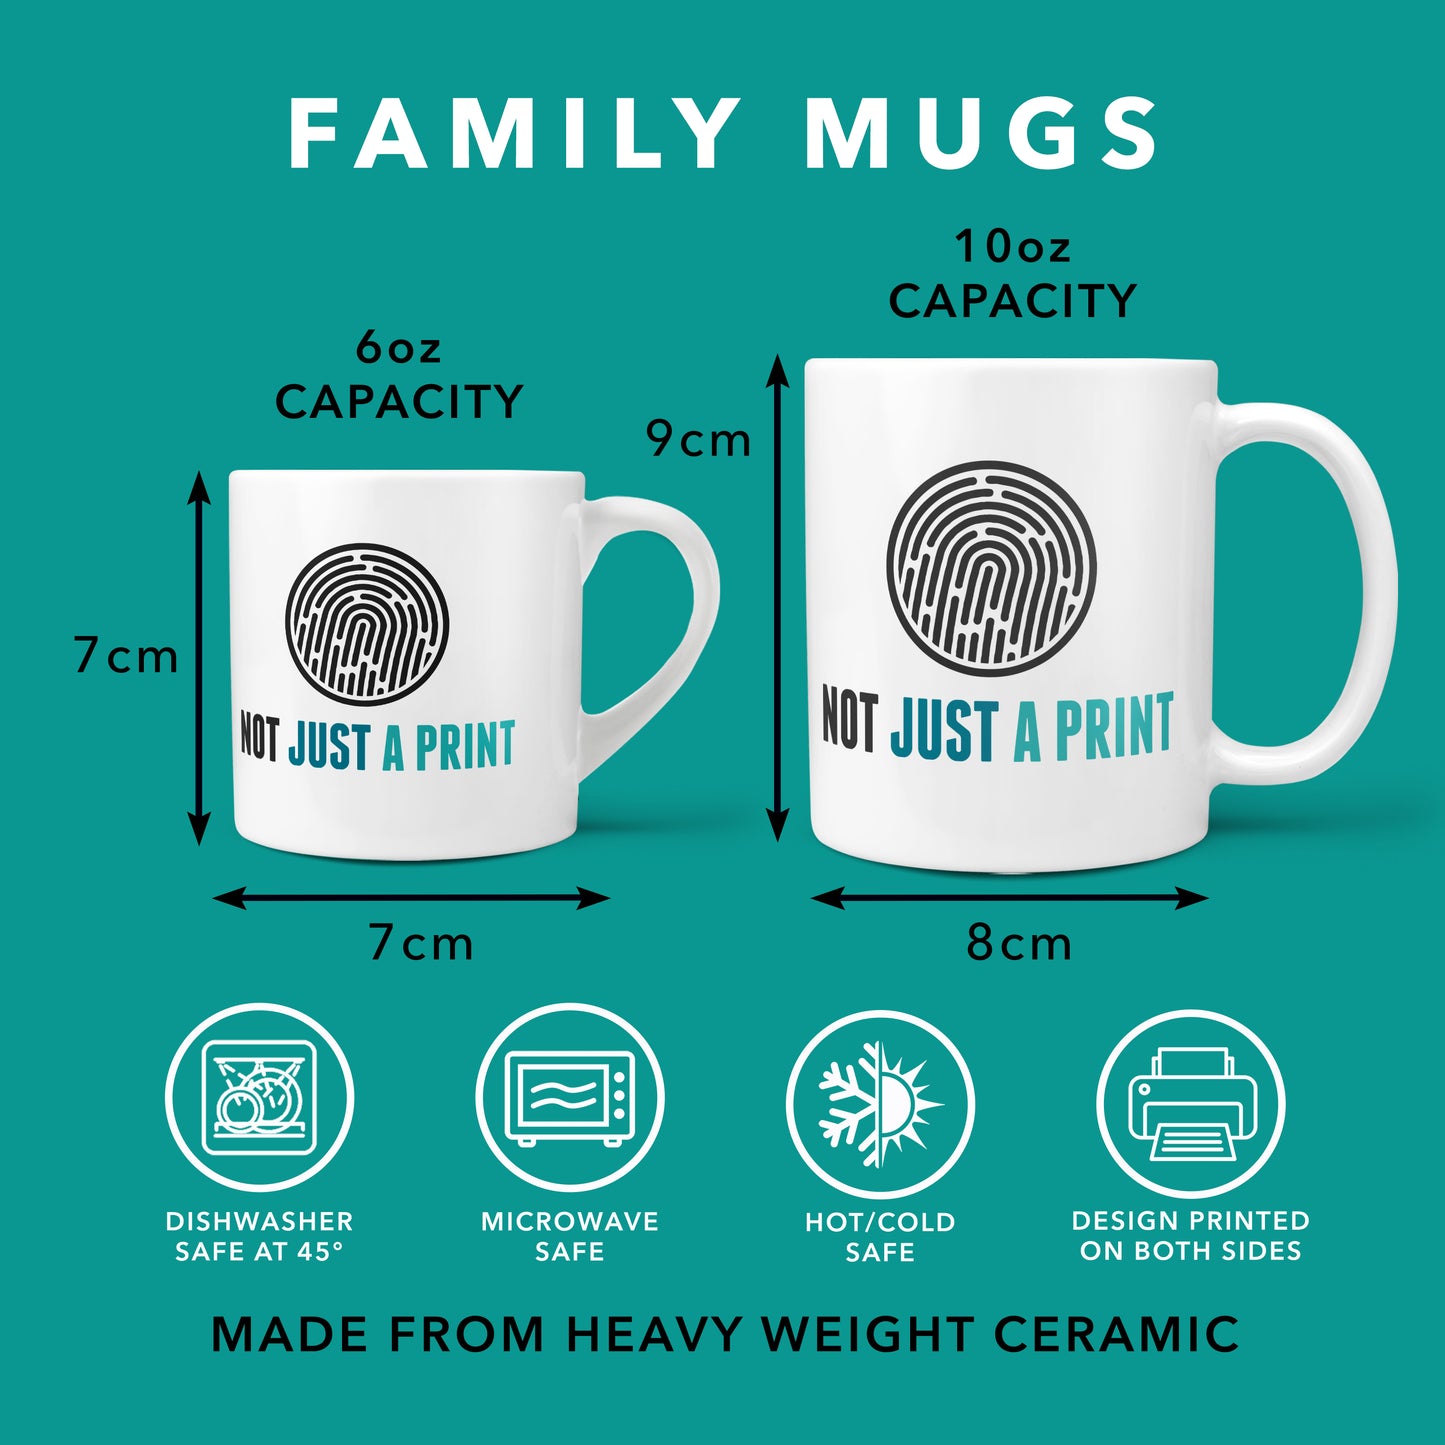 Cheeky Monkey Personalised Family Mug and Coaster Set